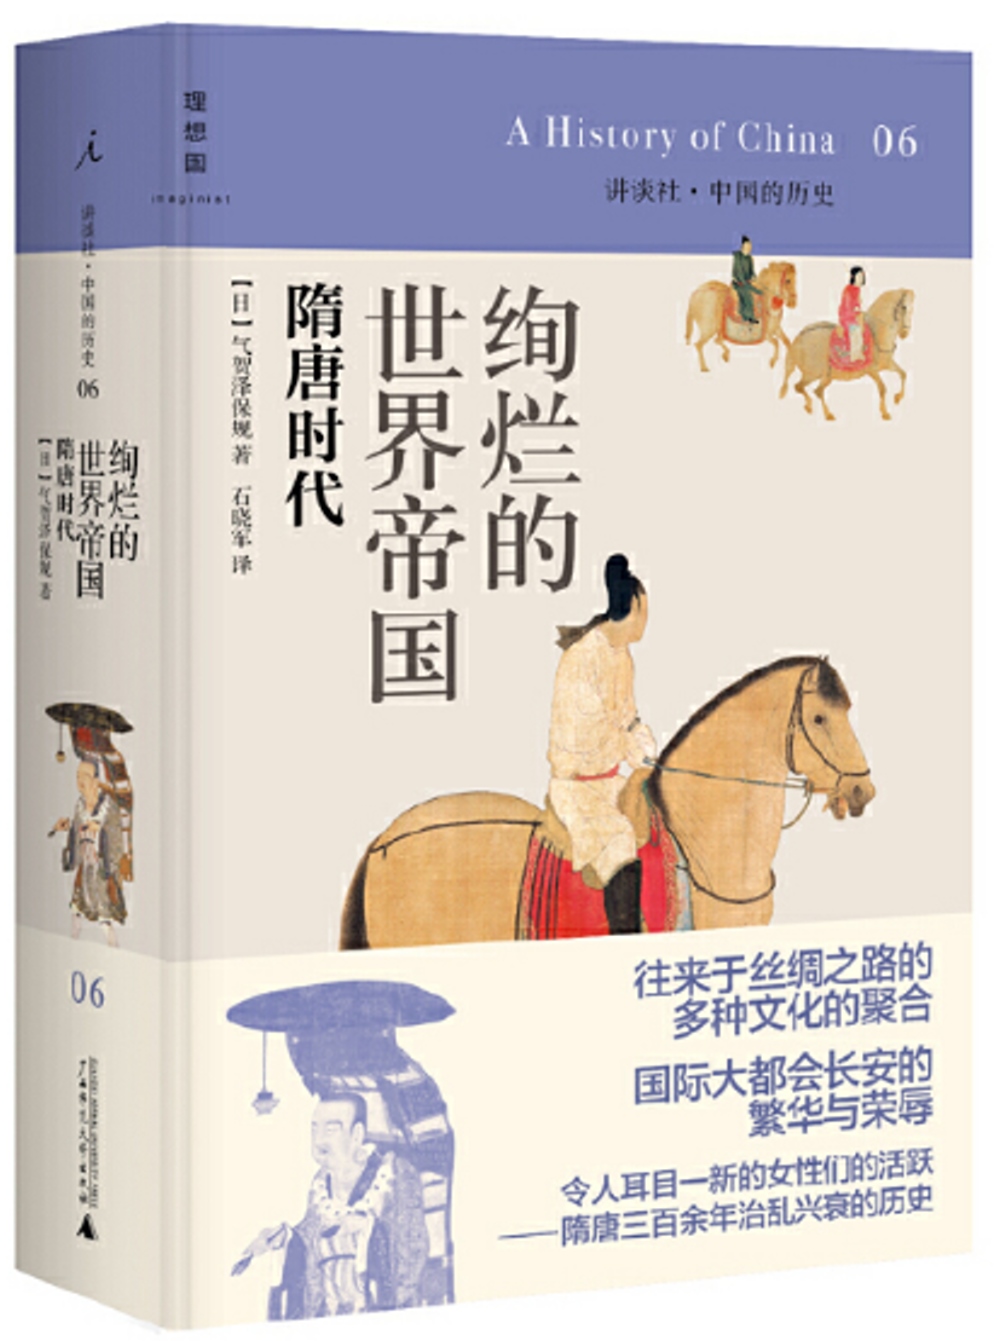 講談社·中國的歷史 06：絢爛輝煌的世界帝國：隋唐時代